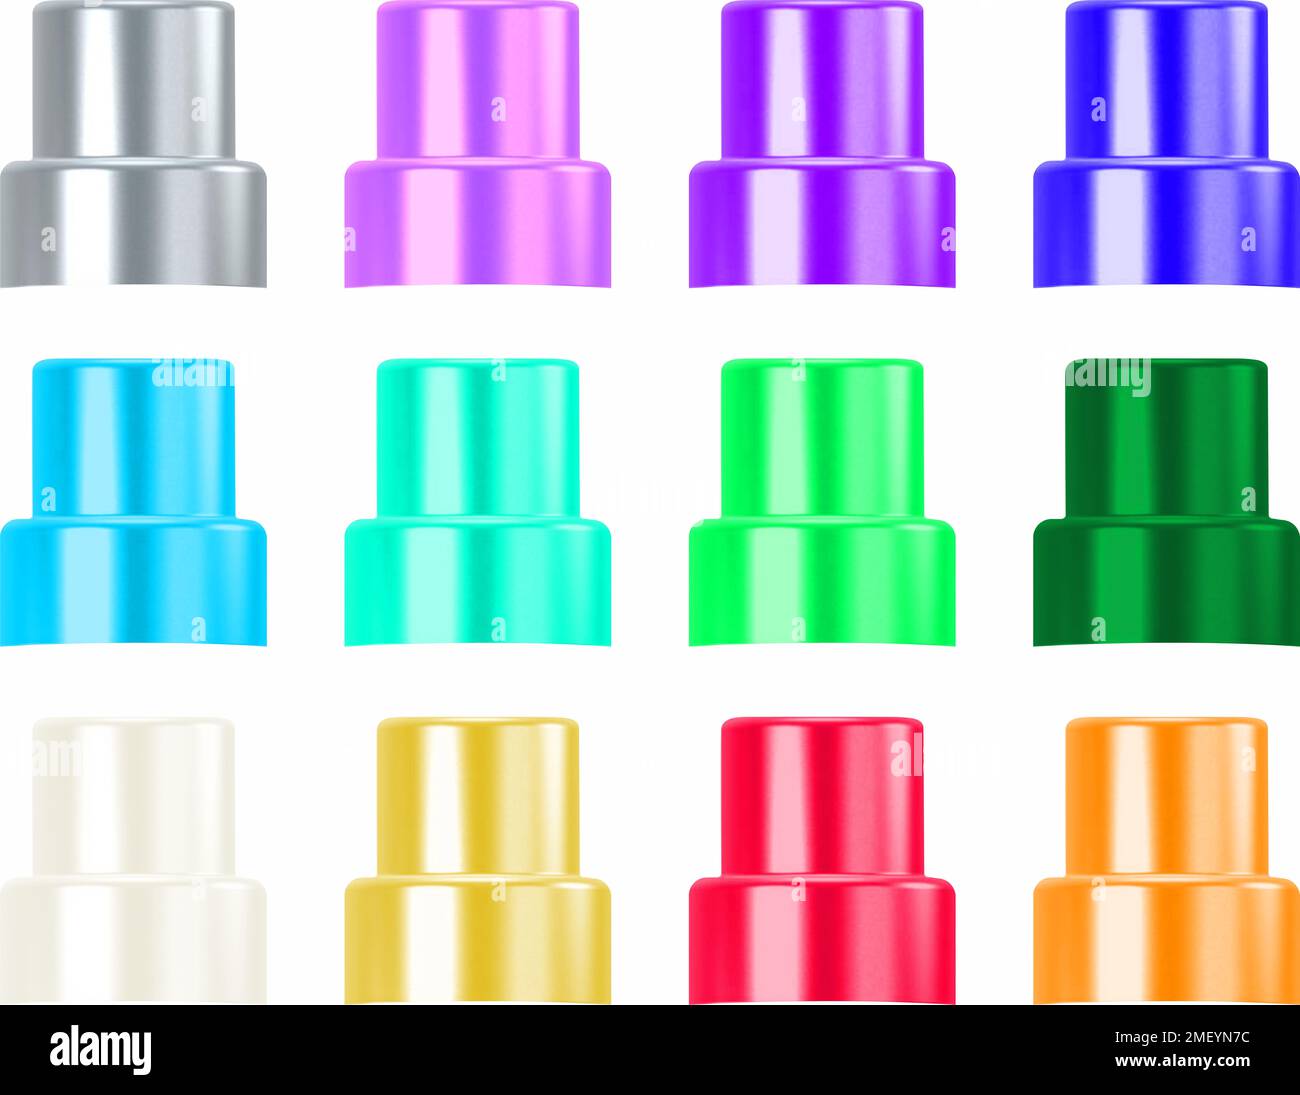 ilustración de tapones para limpiadores o detergentes aislados Stock Photo